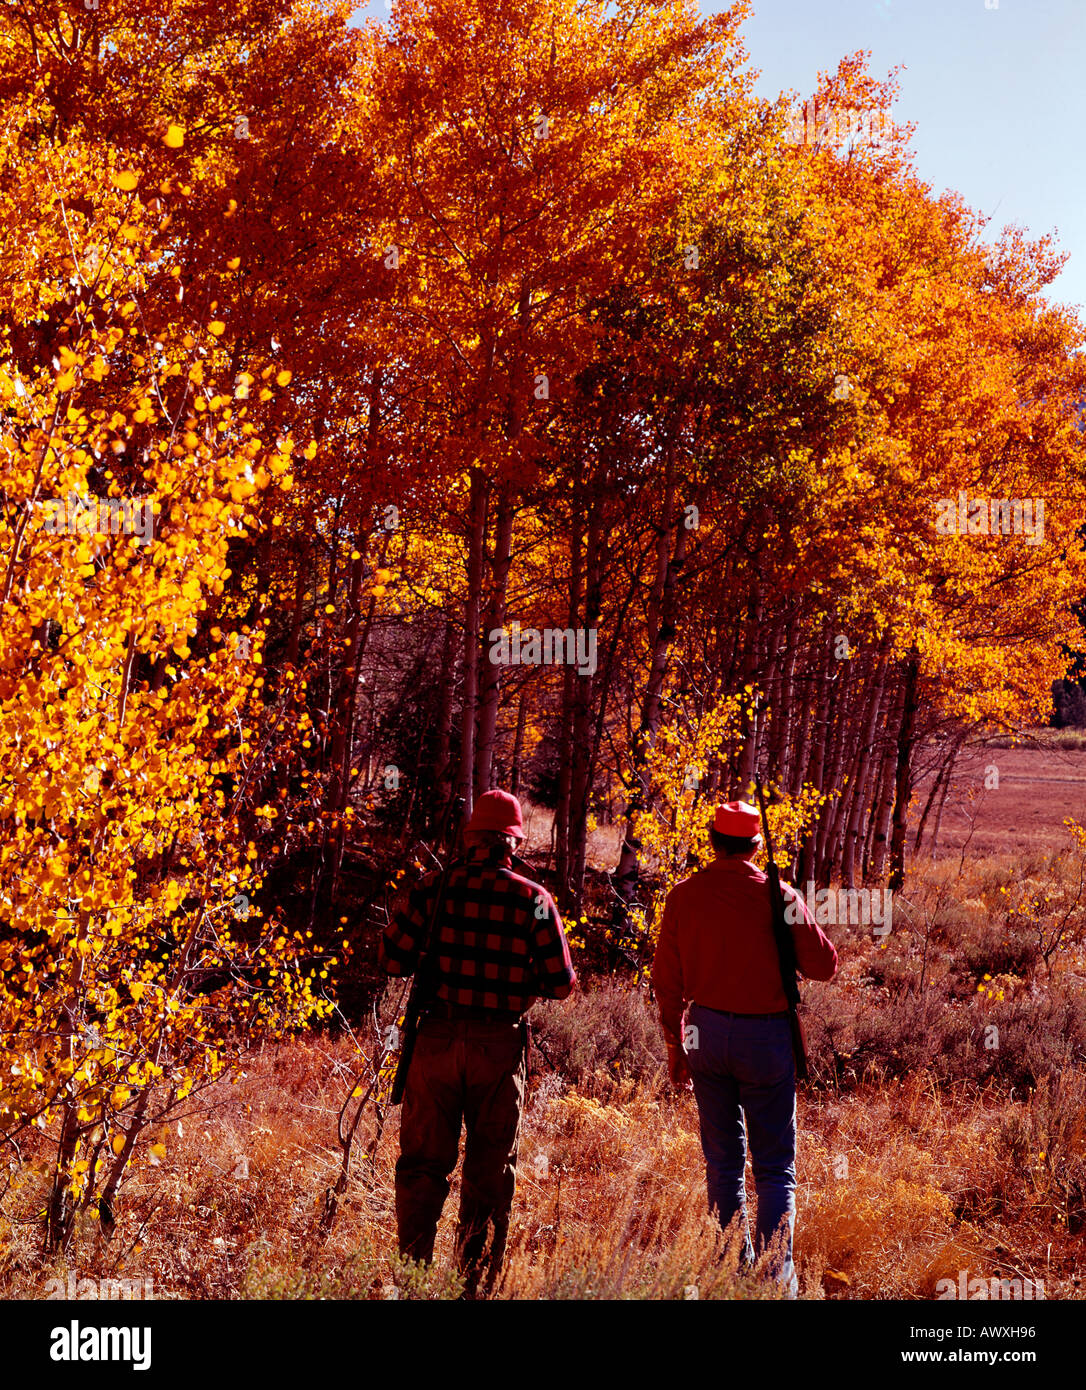 Deux chasseurs de gros gibier entrer dans un bosquet de trembles mis aux couleurs de l'Automne doré Banque D'Images